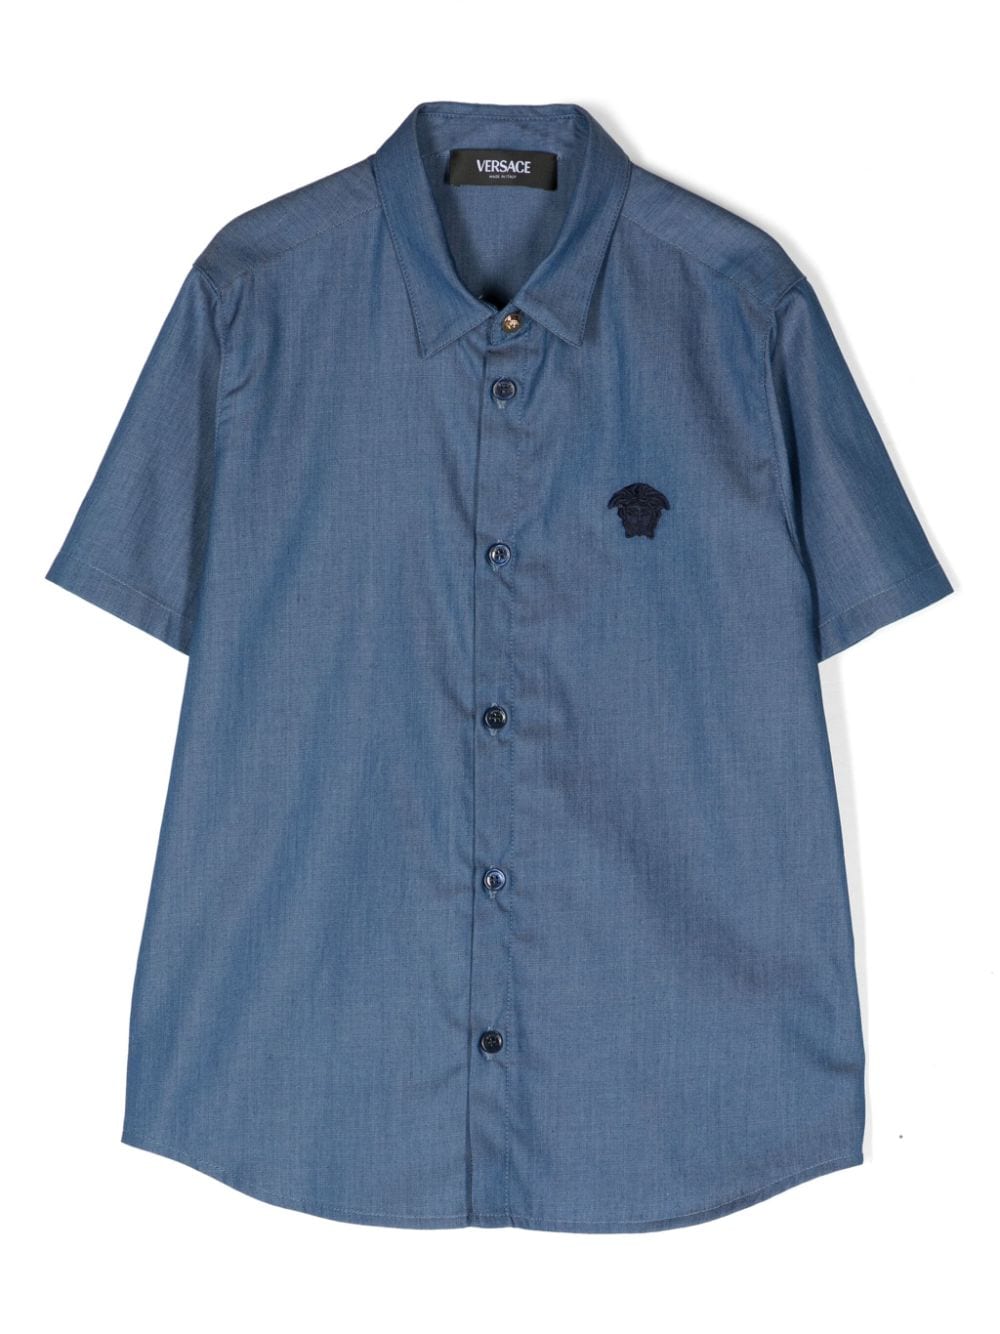 Camicia blu per bambino con logo